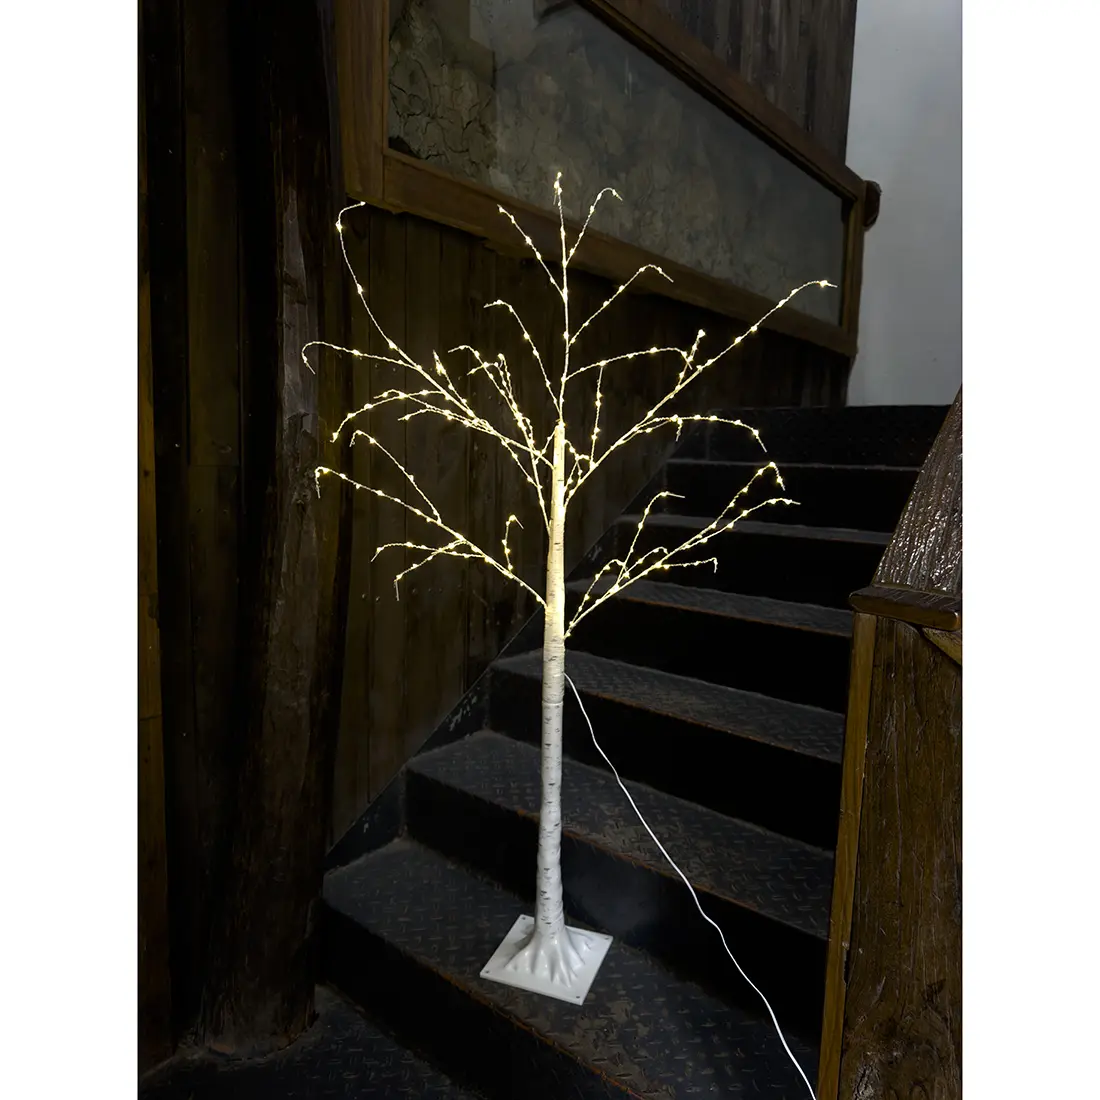 Di alta qualità all'aperto fata in fibra ottica di illuminazione natale albero Led luce rami luci